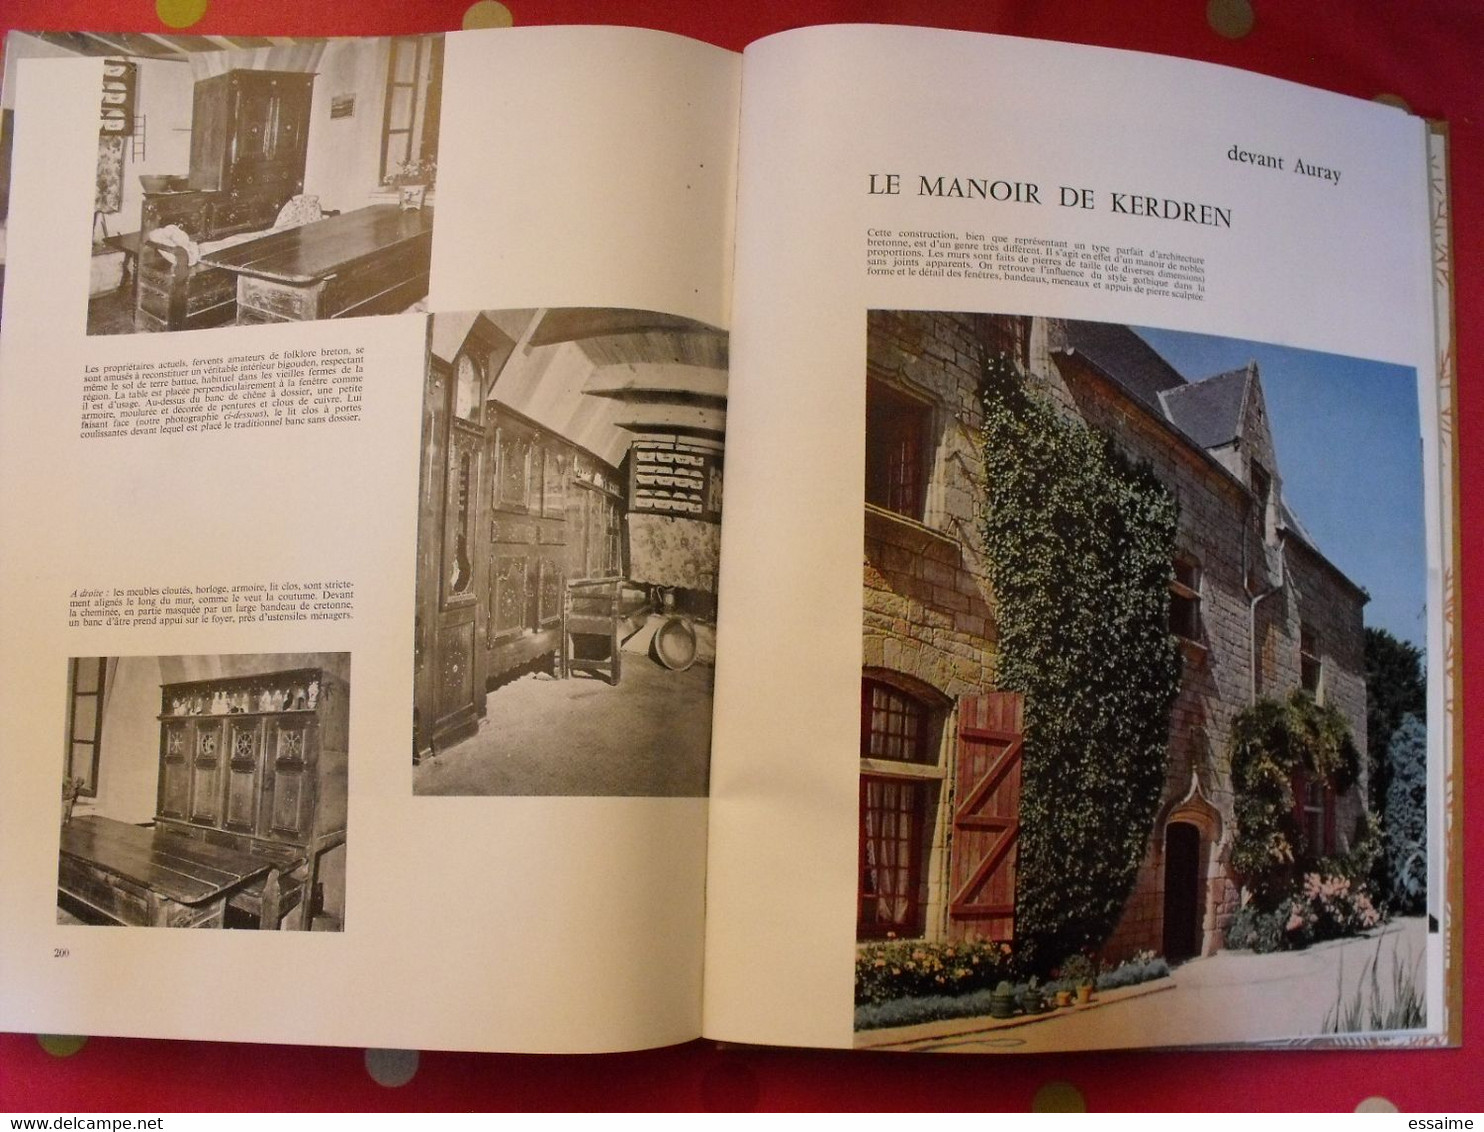 maisons de France "styles régionaux". plaisir de france vers 1950-60. très illustré. beau livre avec emboitage